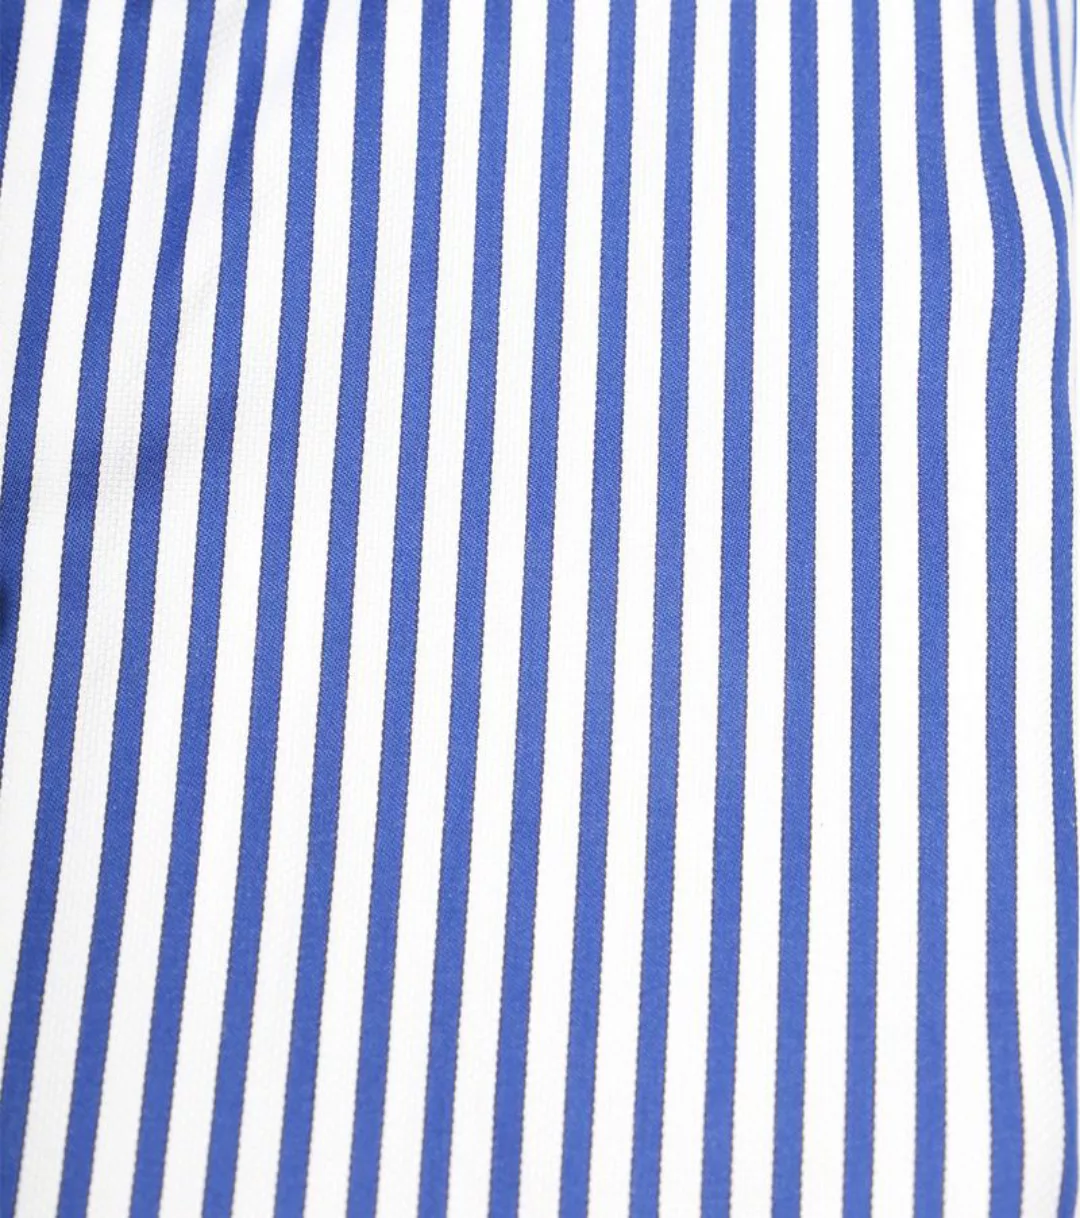 Suitable Hemd Blau Streifen - Größe 41 günstig online kaufen